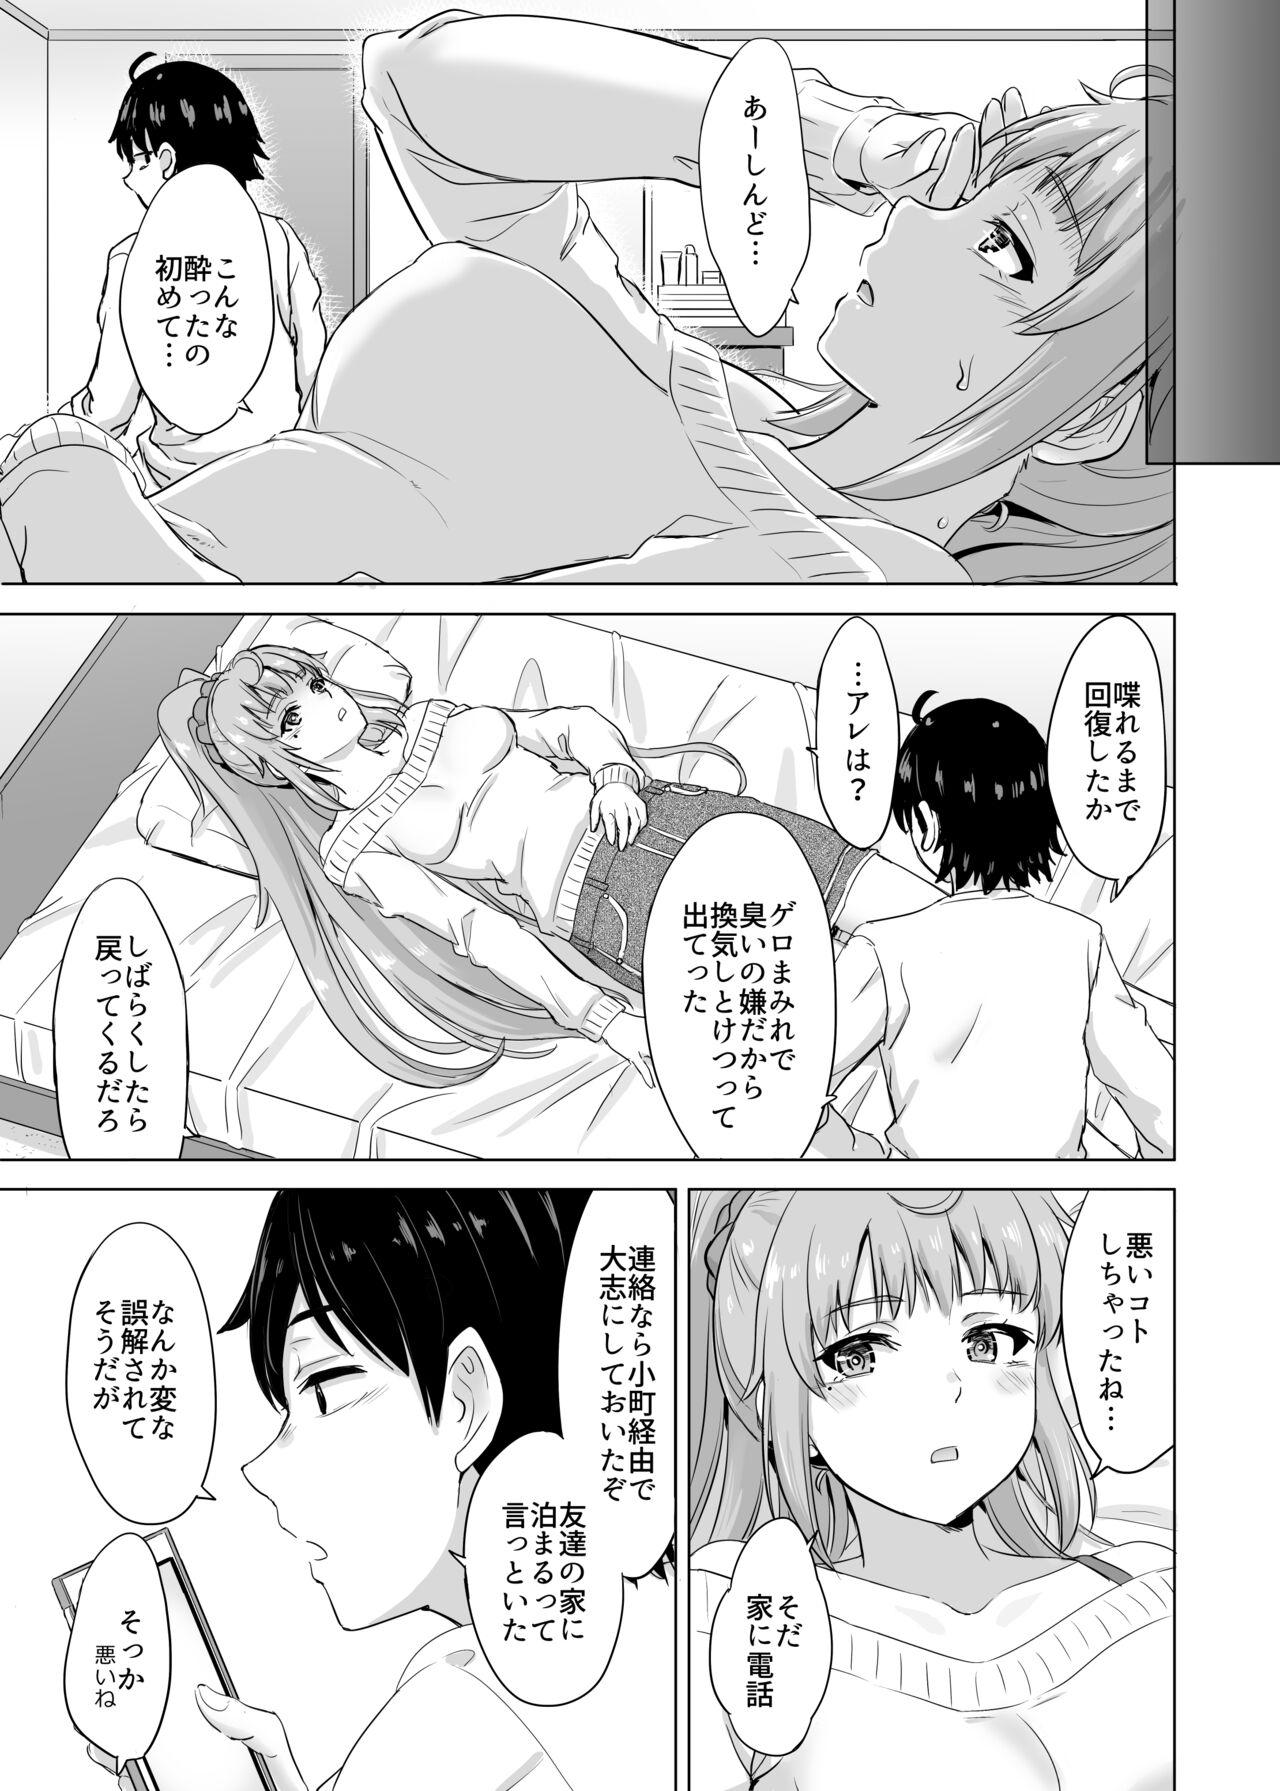 3way あーしさんサキサキ漫画 - Yahari ore no seishun love come wa machigatteiru Dad - Page 3